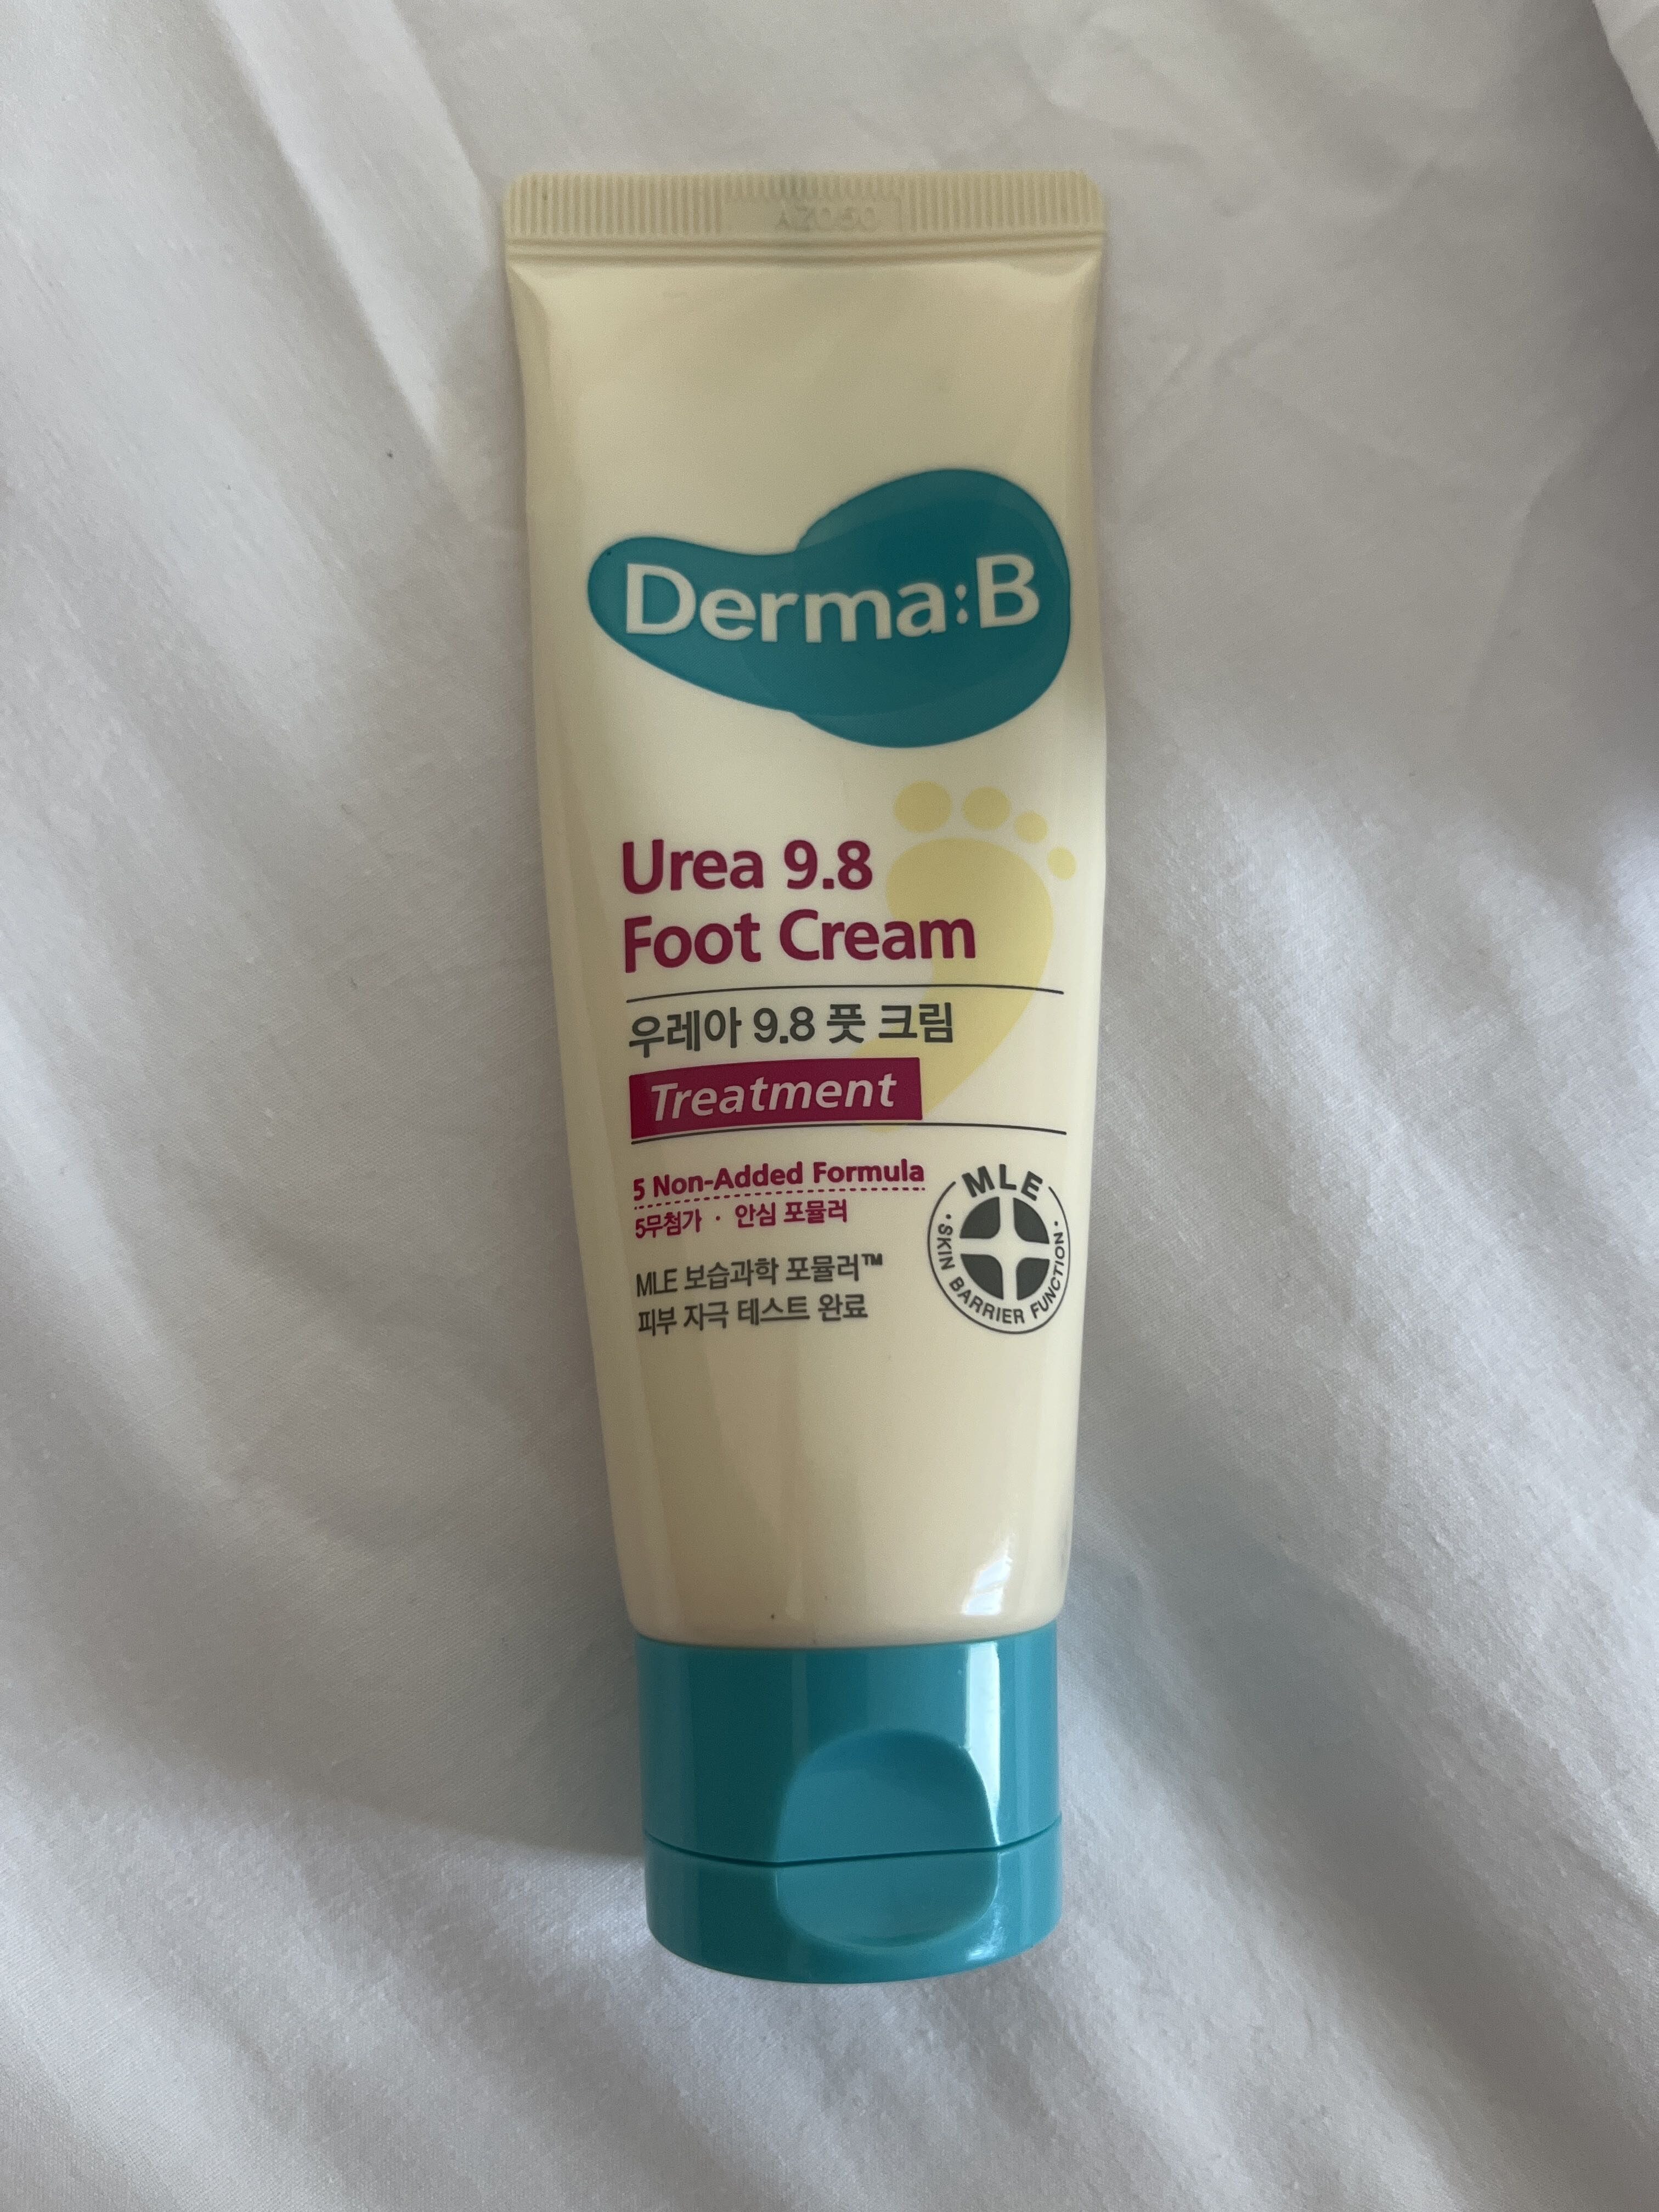 Foot Cream Urea 9.8 - Product - en